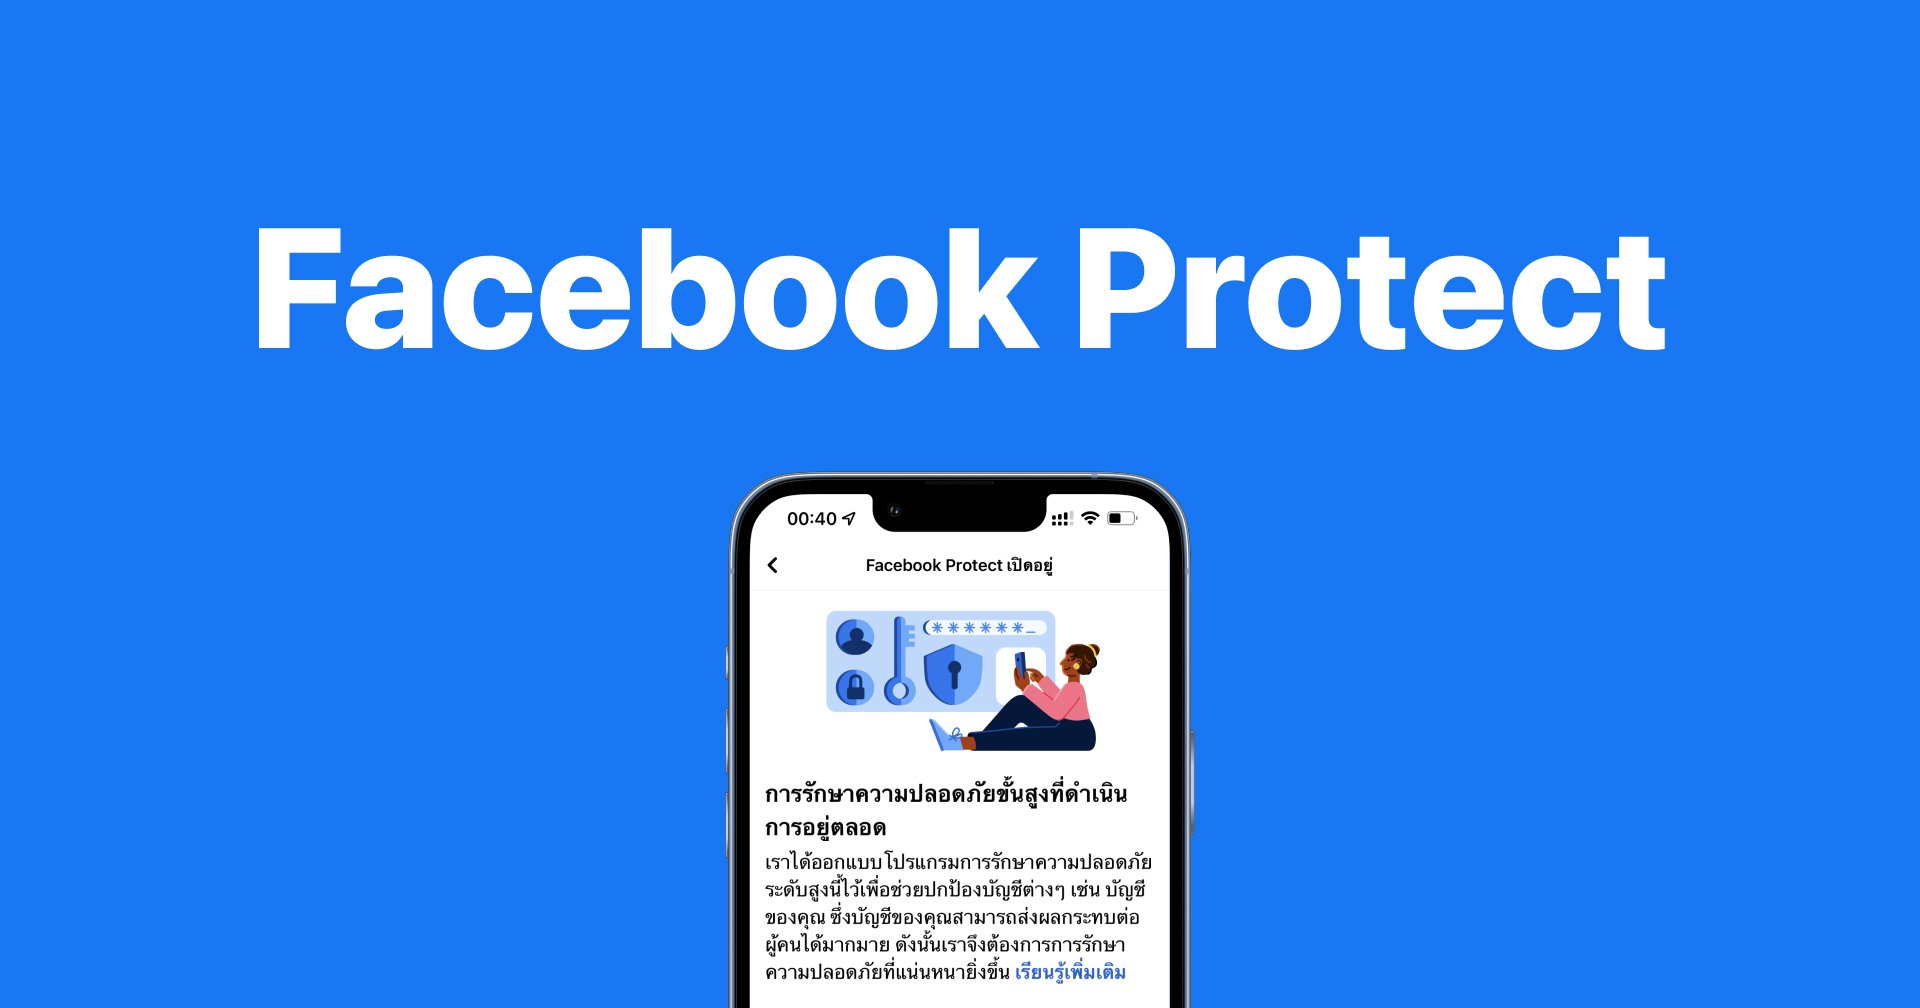 ไขข้อสงสัย!! Facebook Protect คืออะไร? ต้องเปิดใช้งาน ไม่นั้นจะใช้งานเฟซบุ๊กไม่ได้